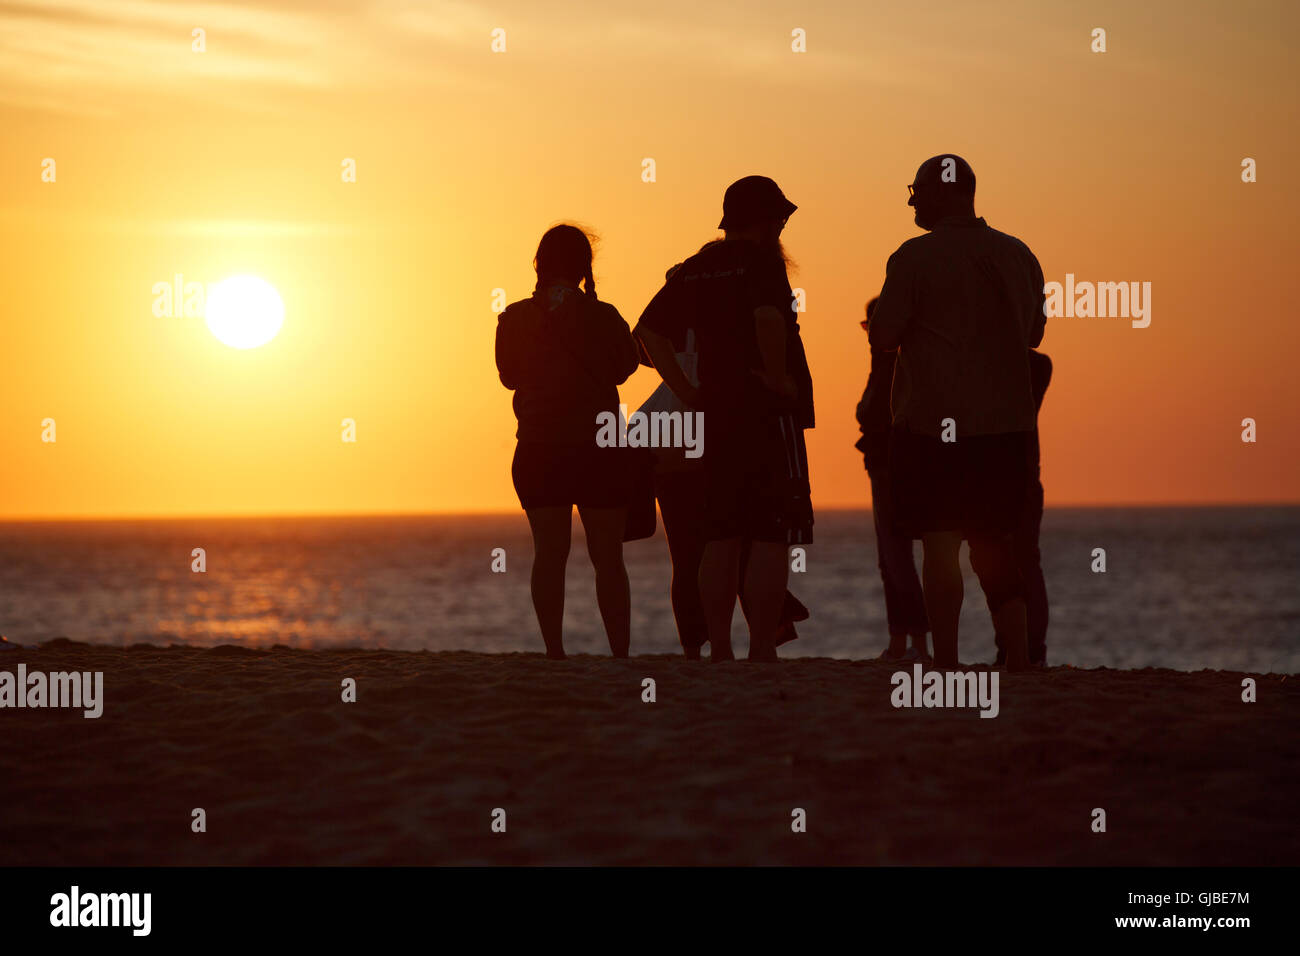 People on Race Point Beach, sunset, Provincetown, Massachusetts Stock Photo